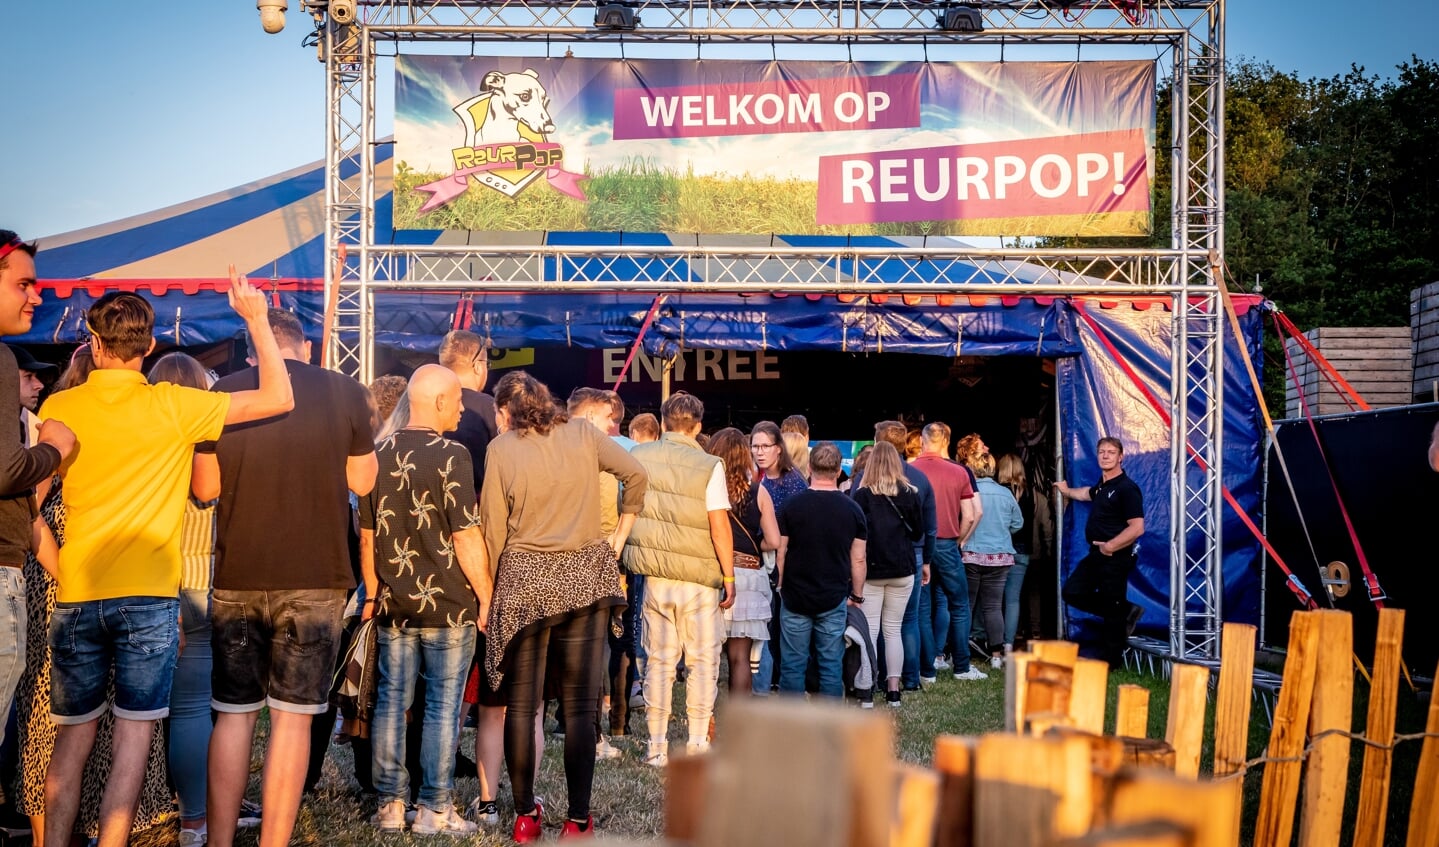 Het festivalterrein van Reurpop kent dit jaar een nieuwe frisse indeling, met een tweetal totaal vernieuwde podiums. Foto: Joris Telders